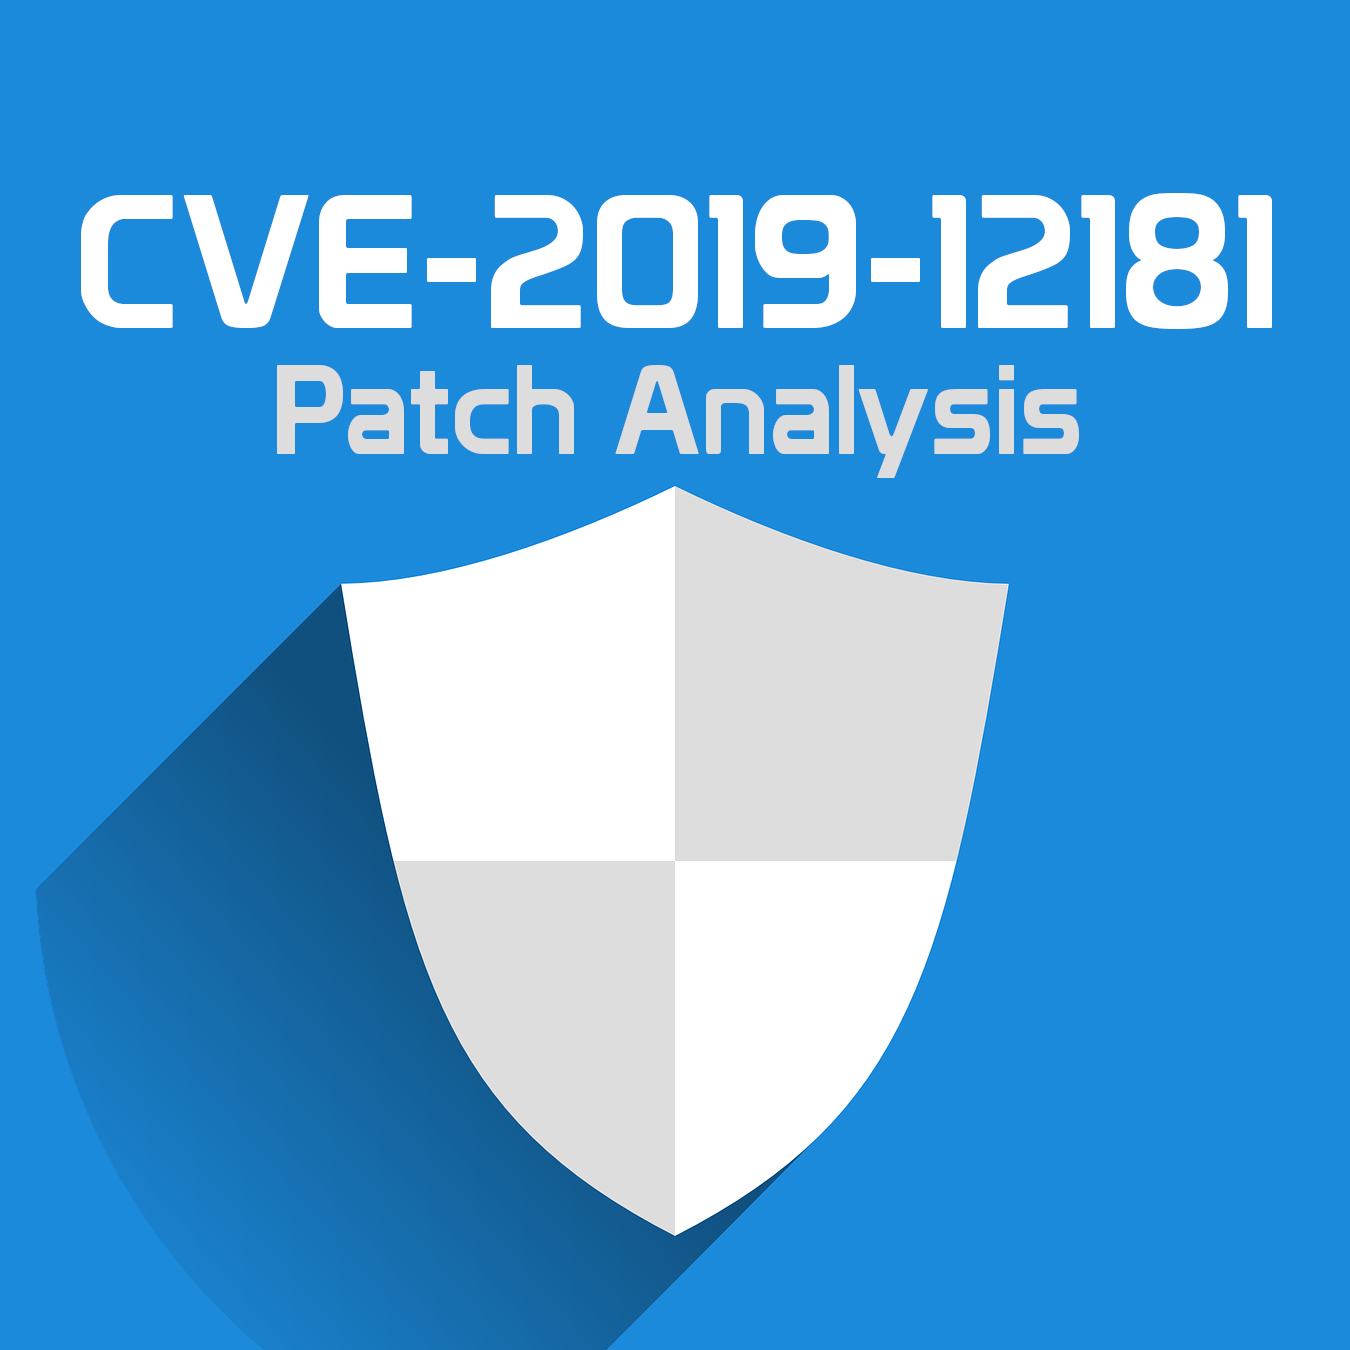 CVE-2019-12181 patch analysis